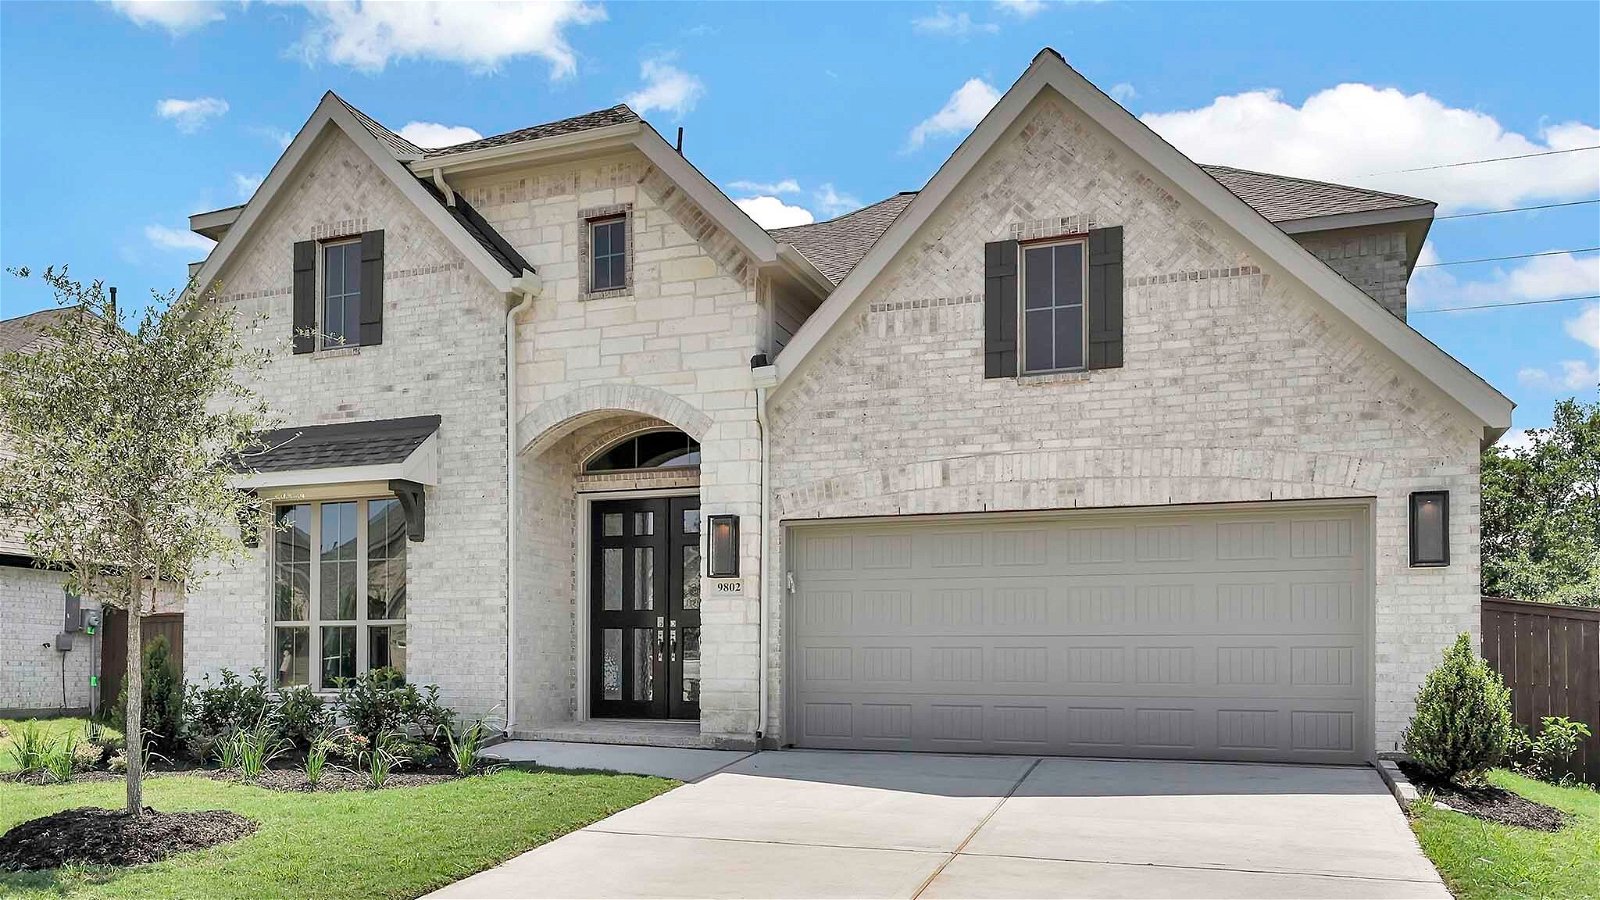 Real estate property located at 9802 Magnolia Estates, Brazoria, Iowa Colony, TX, US